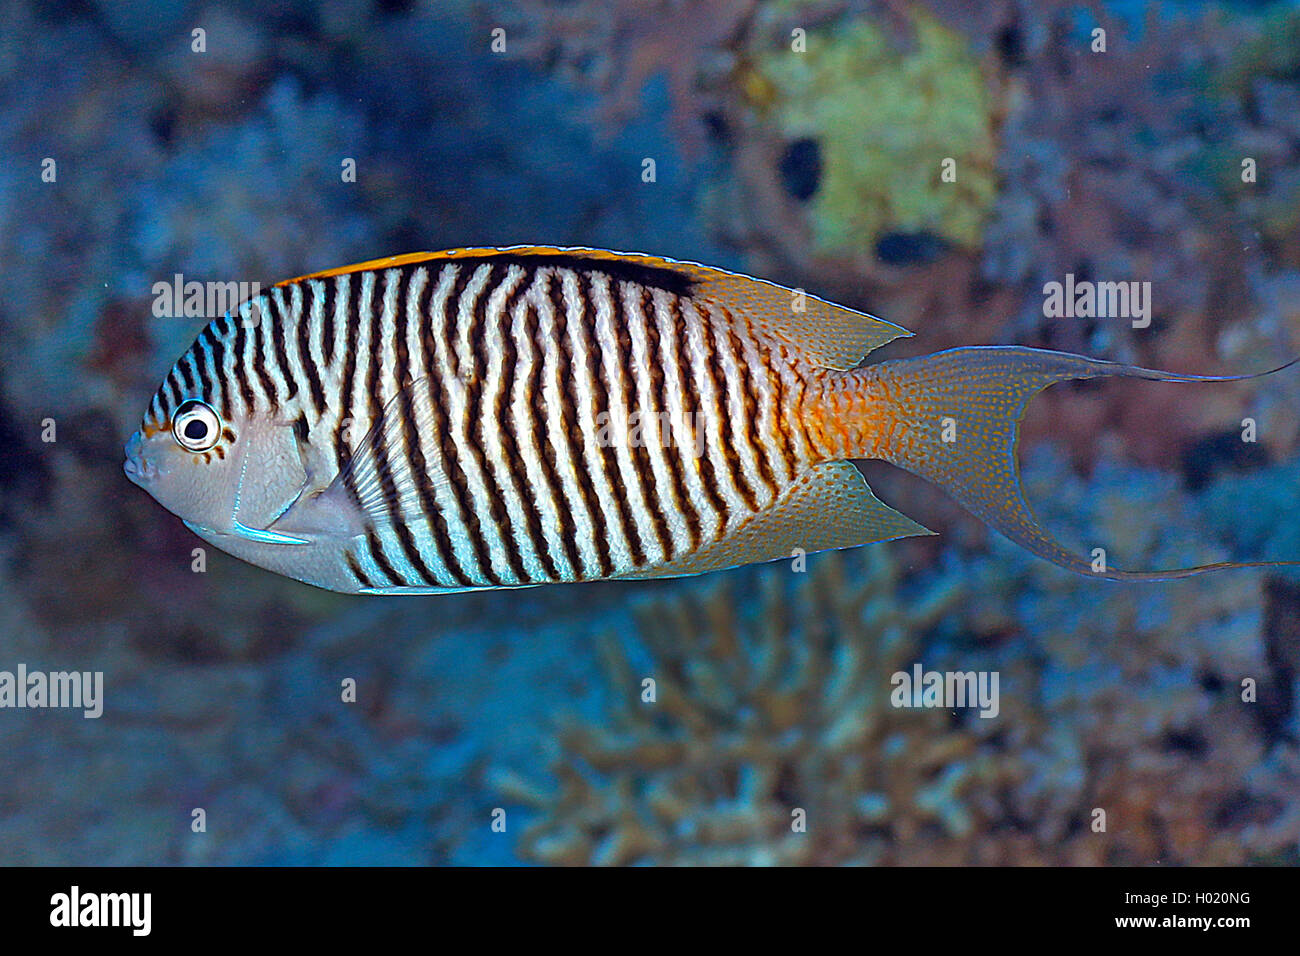 Zebra angelfish, Lyretail angelfish (Genicanthus caudovittatus), male, Egypt, Red Sea Stock Photo